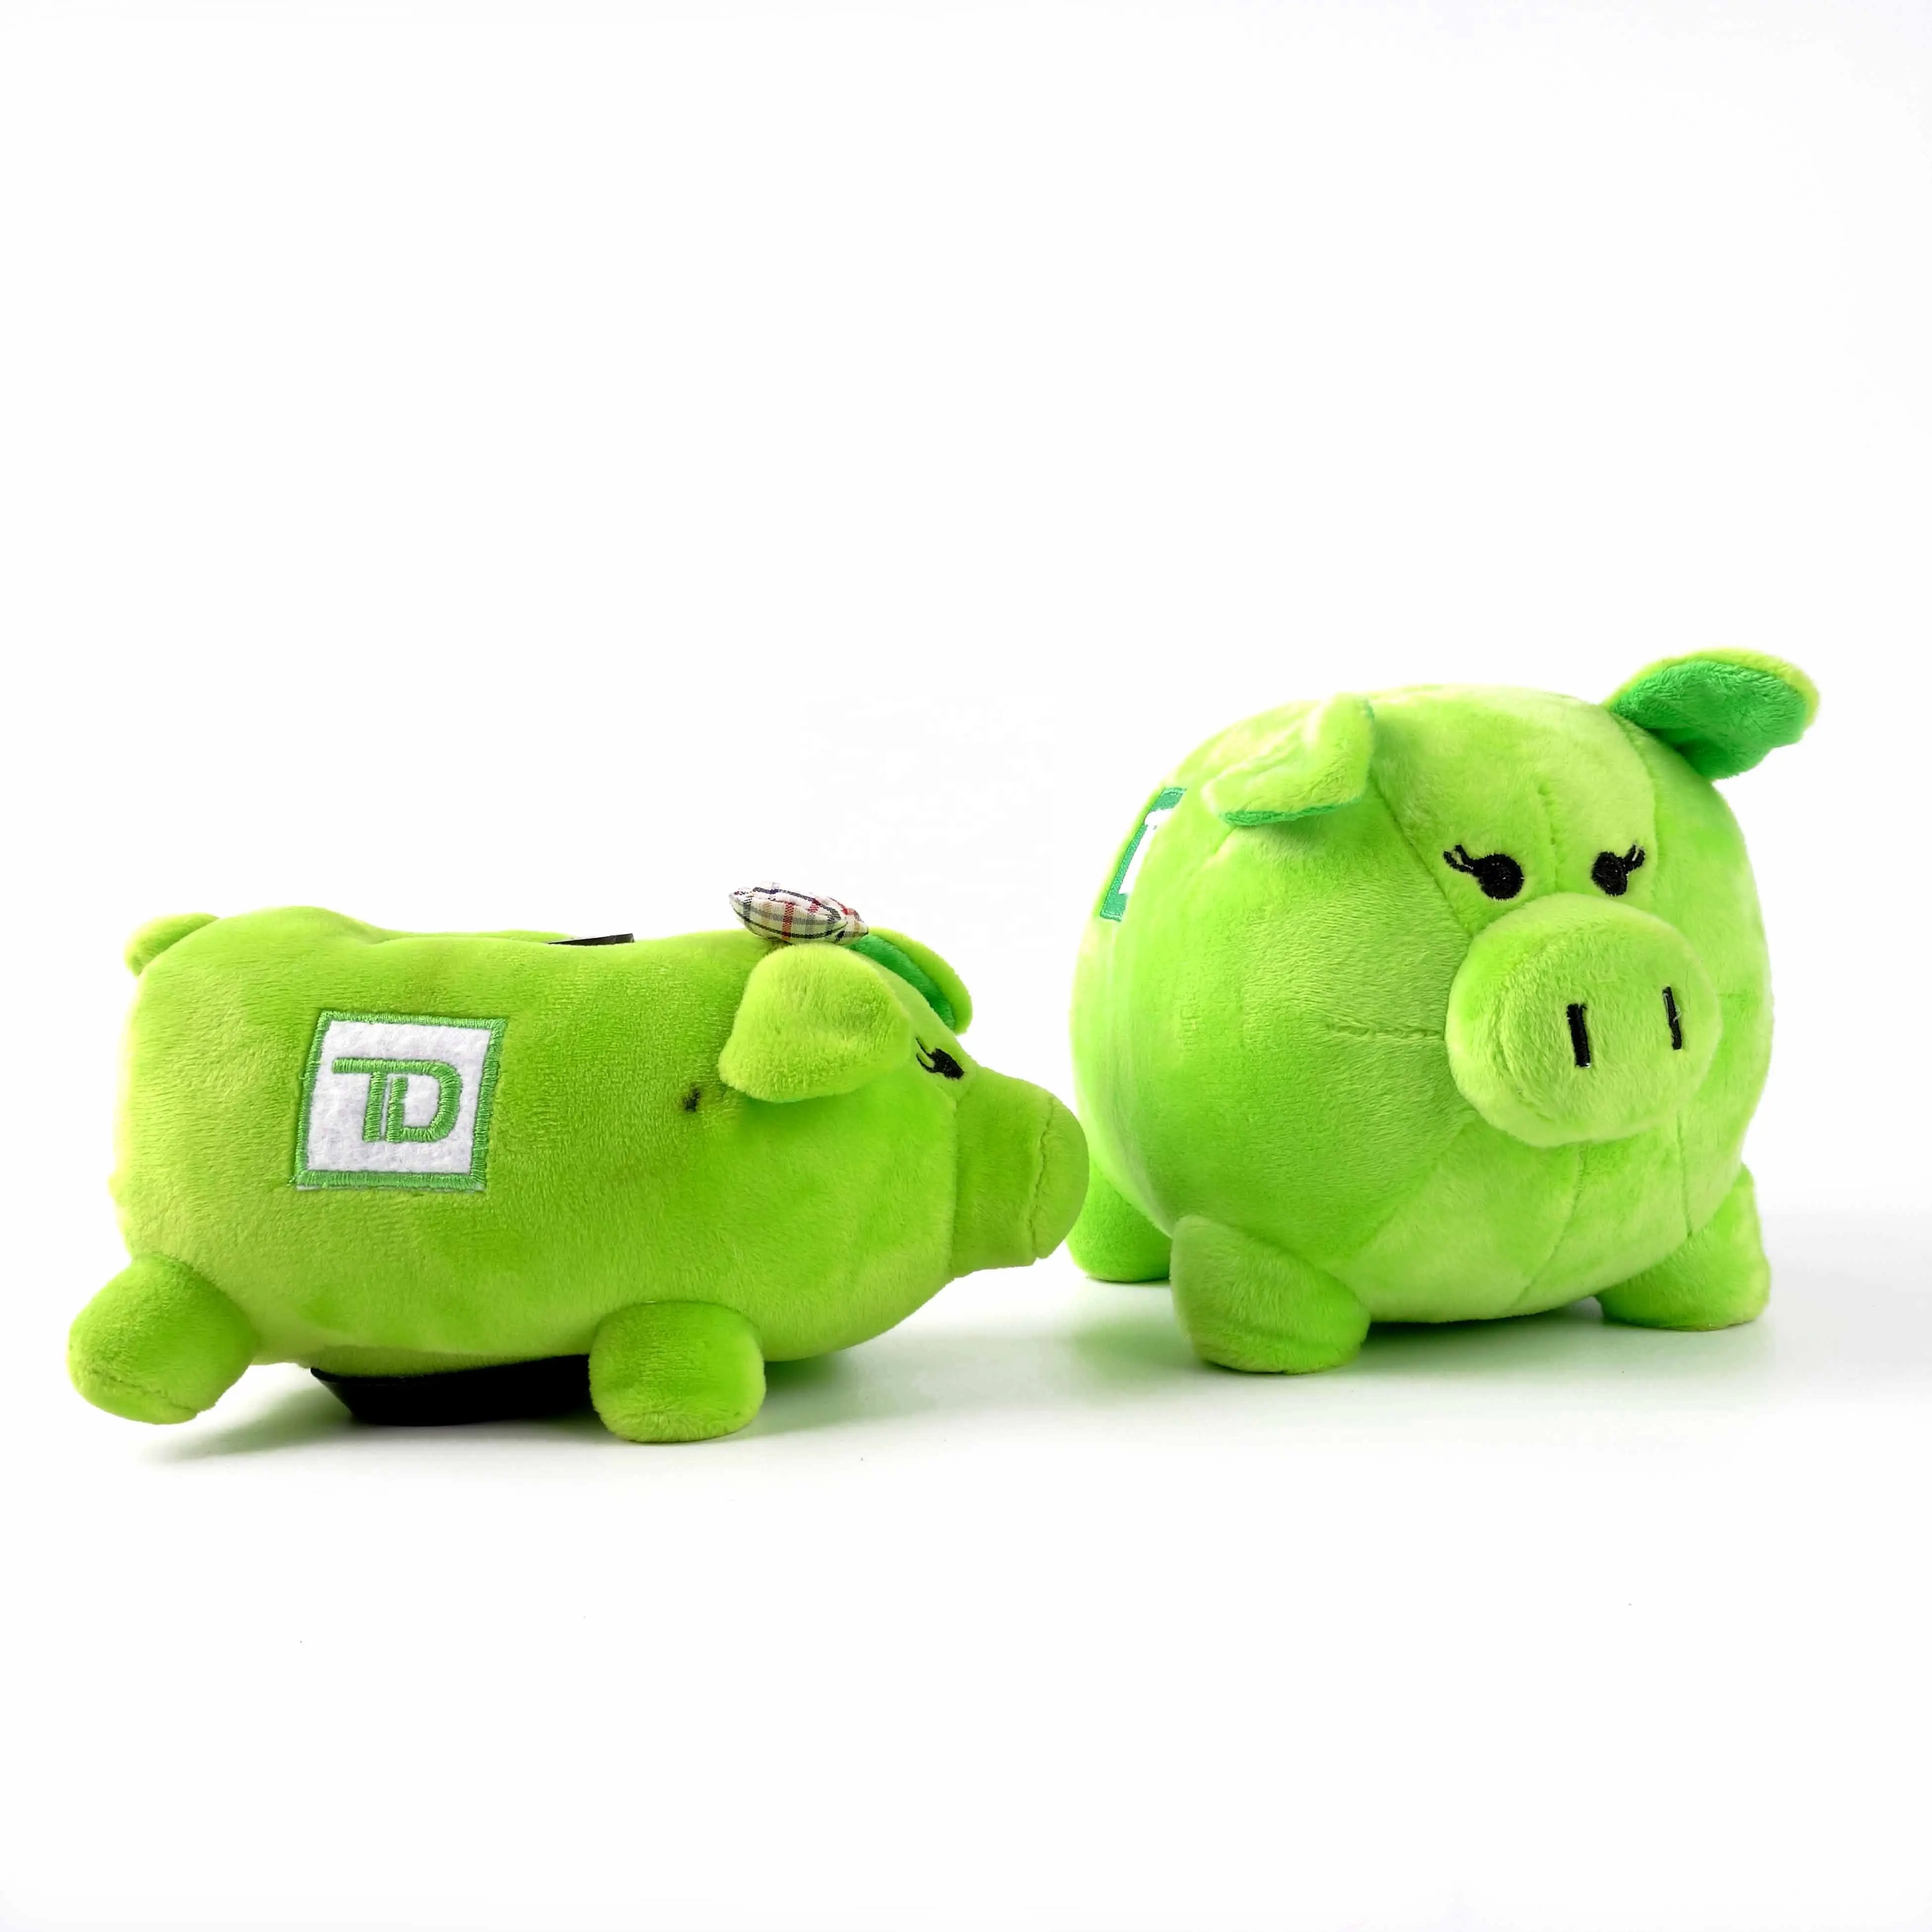 Niedliche weiche Plüsch Tier Schwein Sparschwein für Kinder sparen Münzen Sparschwein Spielzeug Super Soft Ferkel Kuscheltier